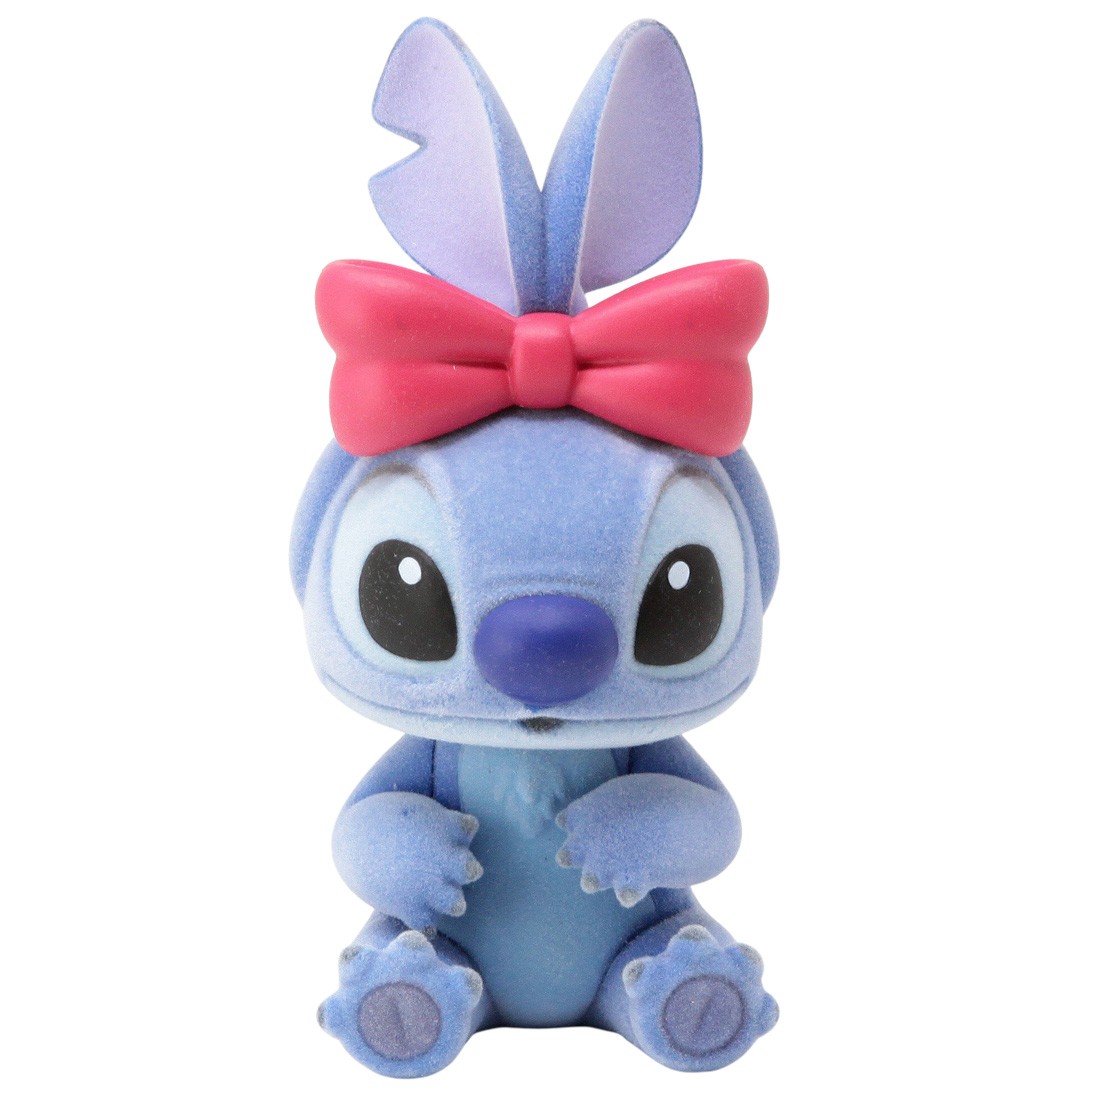 Banpresto Fluffy Puffy Disney Characters Lilo And Stitch - Stitch